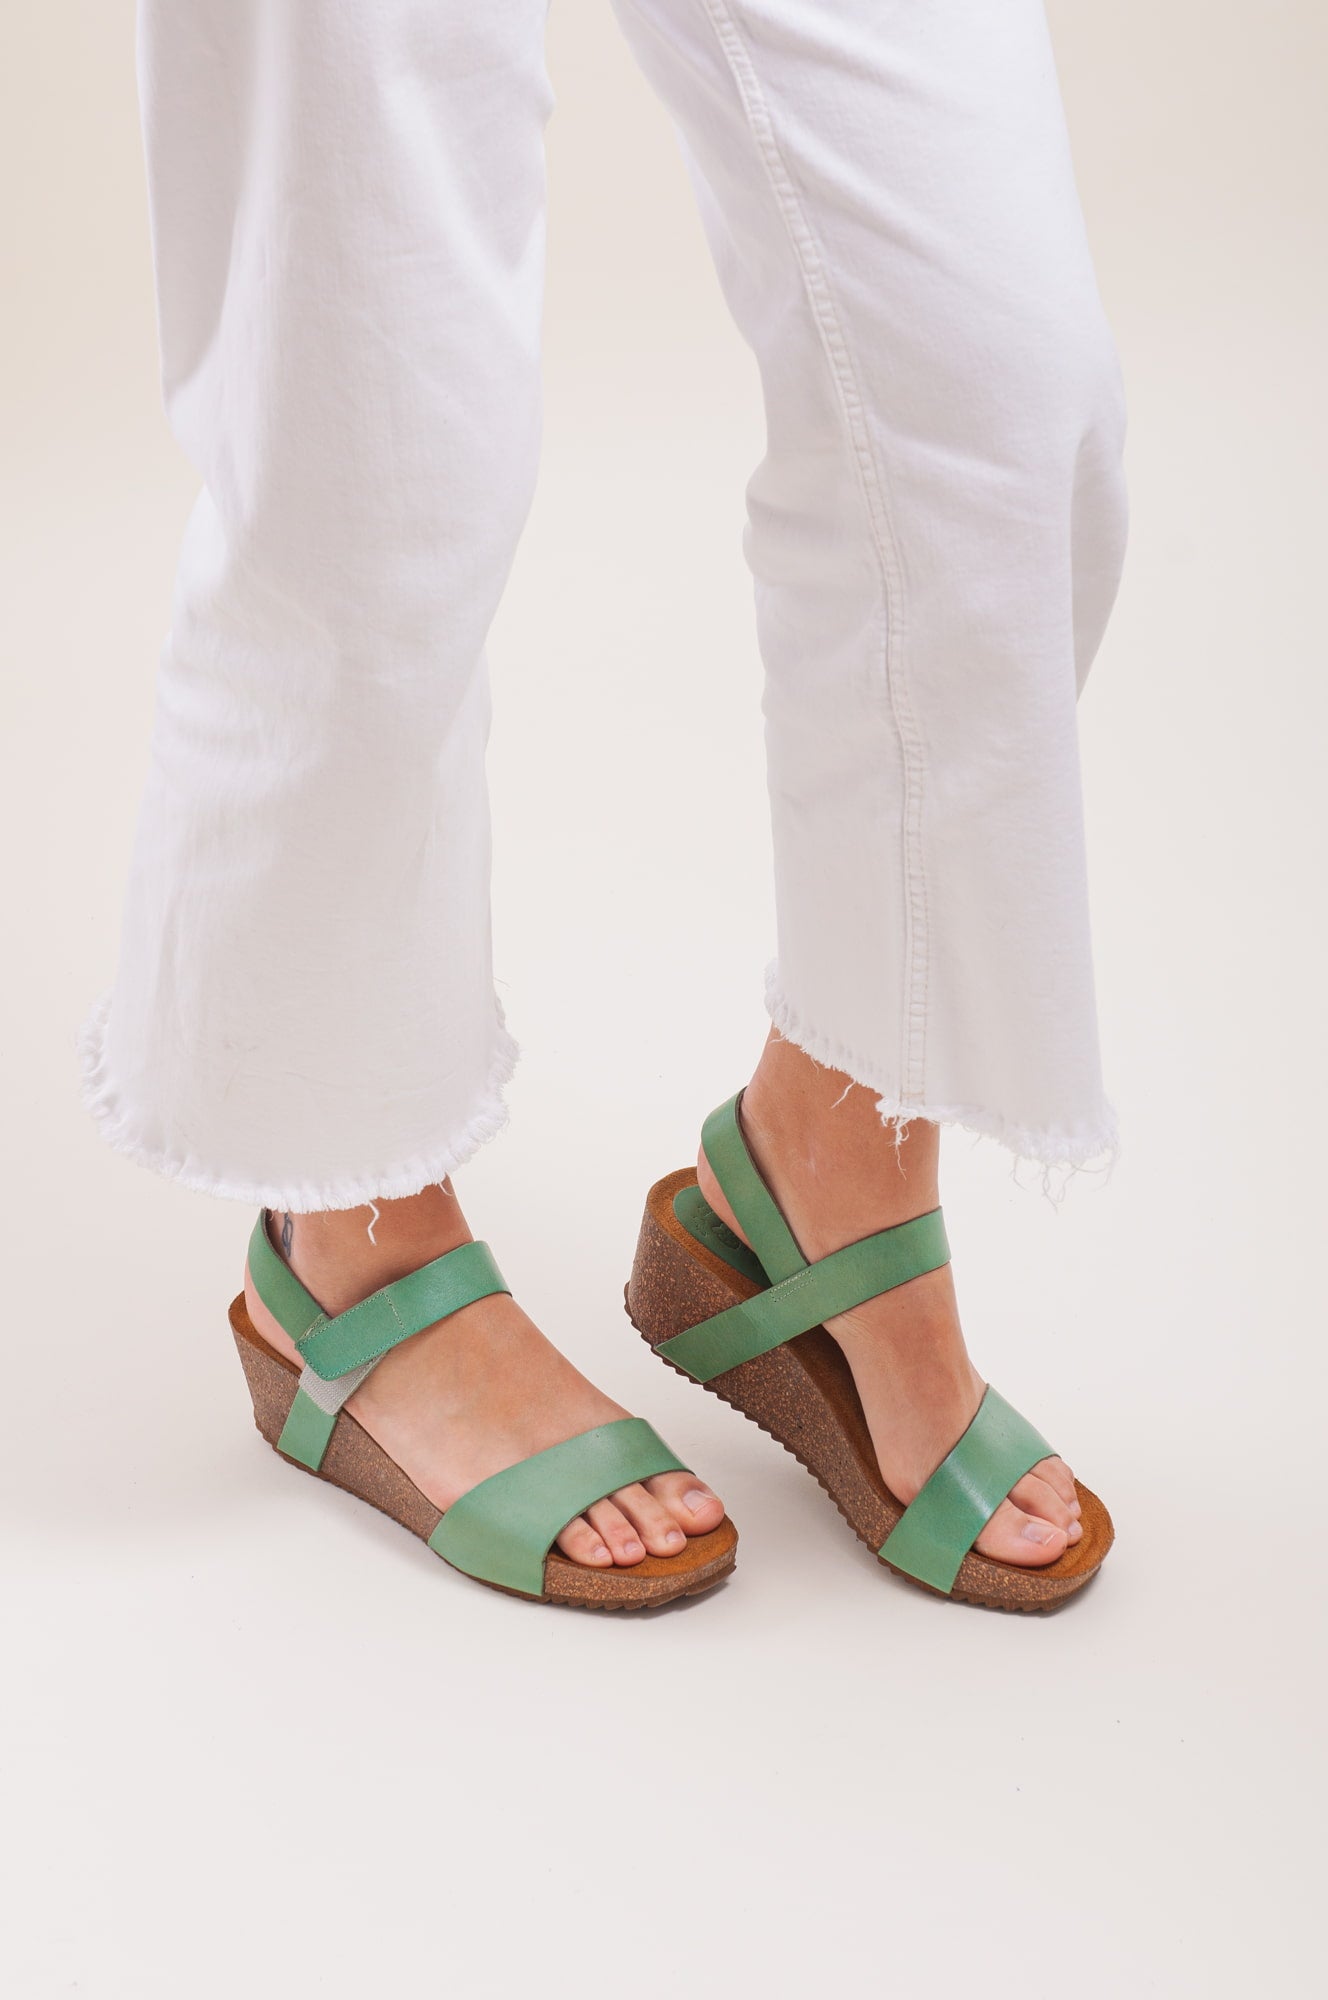 Sandalias de plataforma para mujer. Zapatos de cuña ligeros y cómodos.